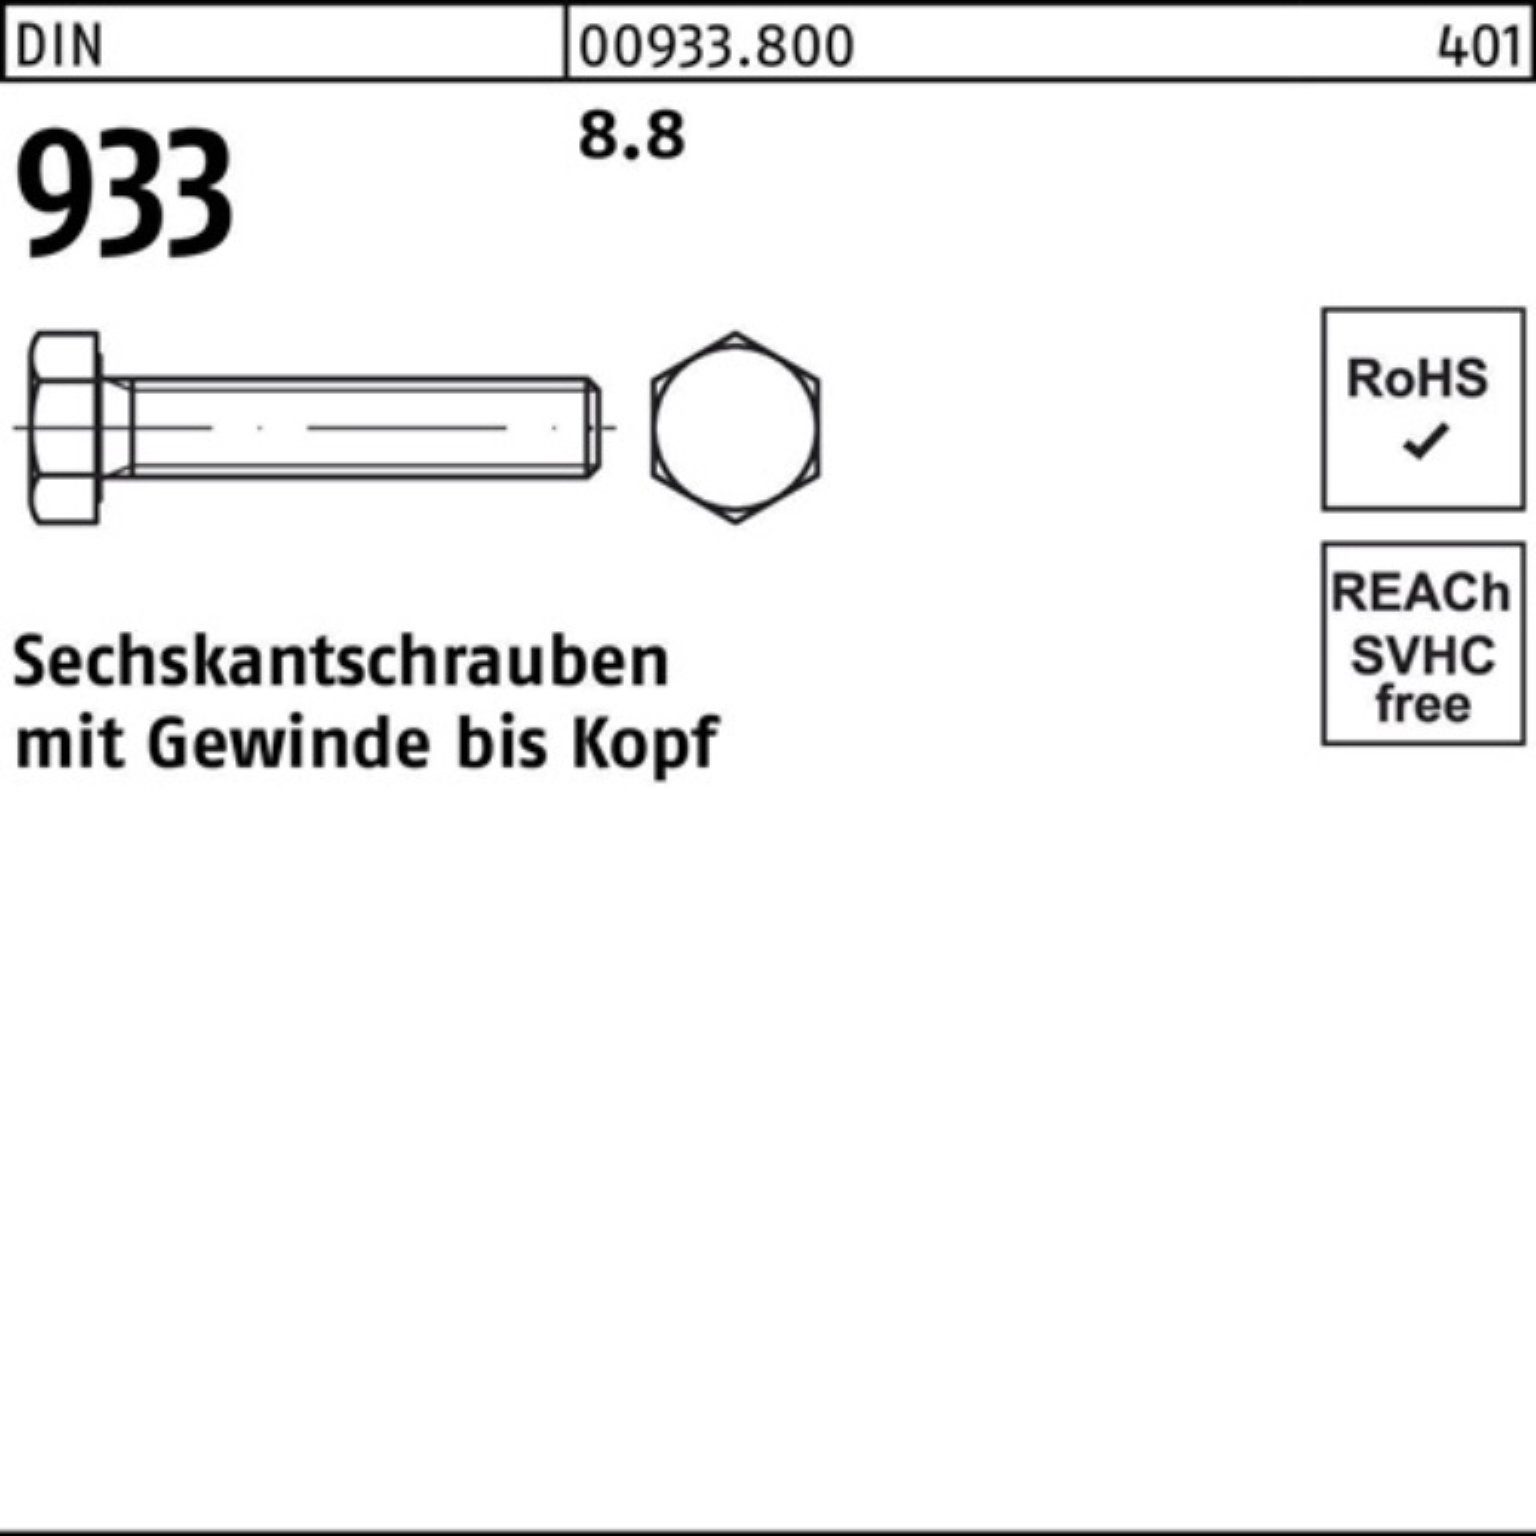 Sechskantschraube Reyher 1 100er Pack DIN 8.8 933 933 Sechskantschraube 85 DIN Stück VG 8 M42x